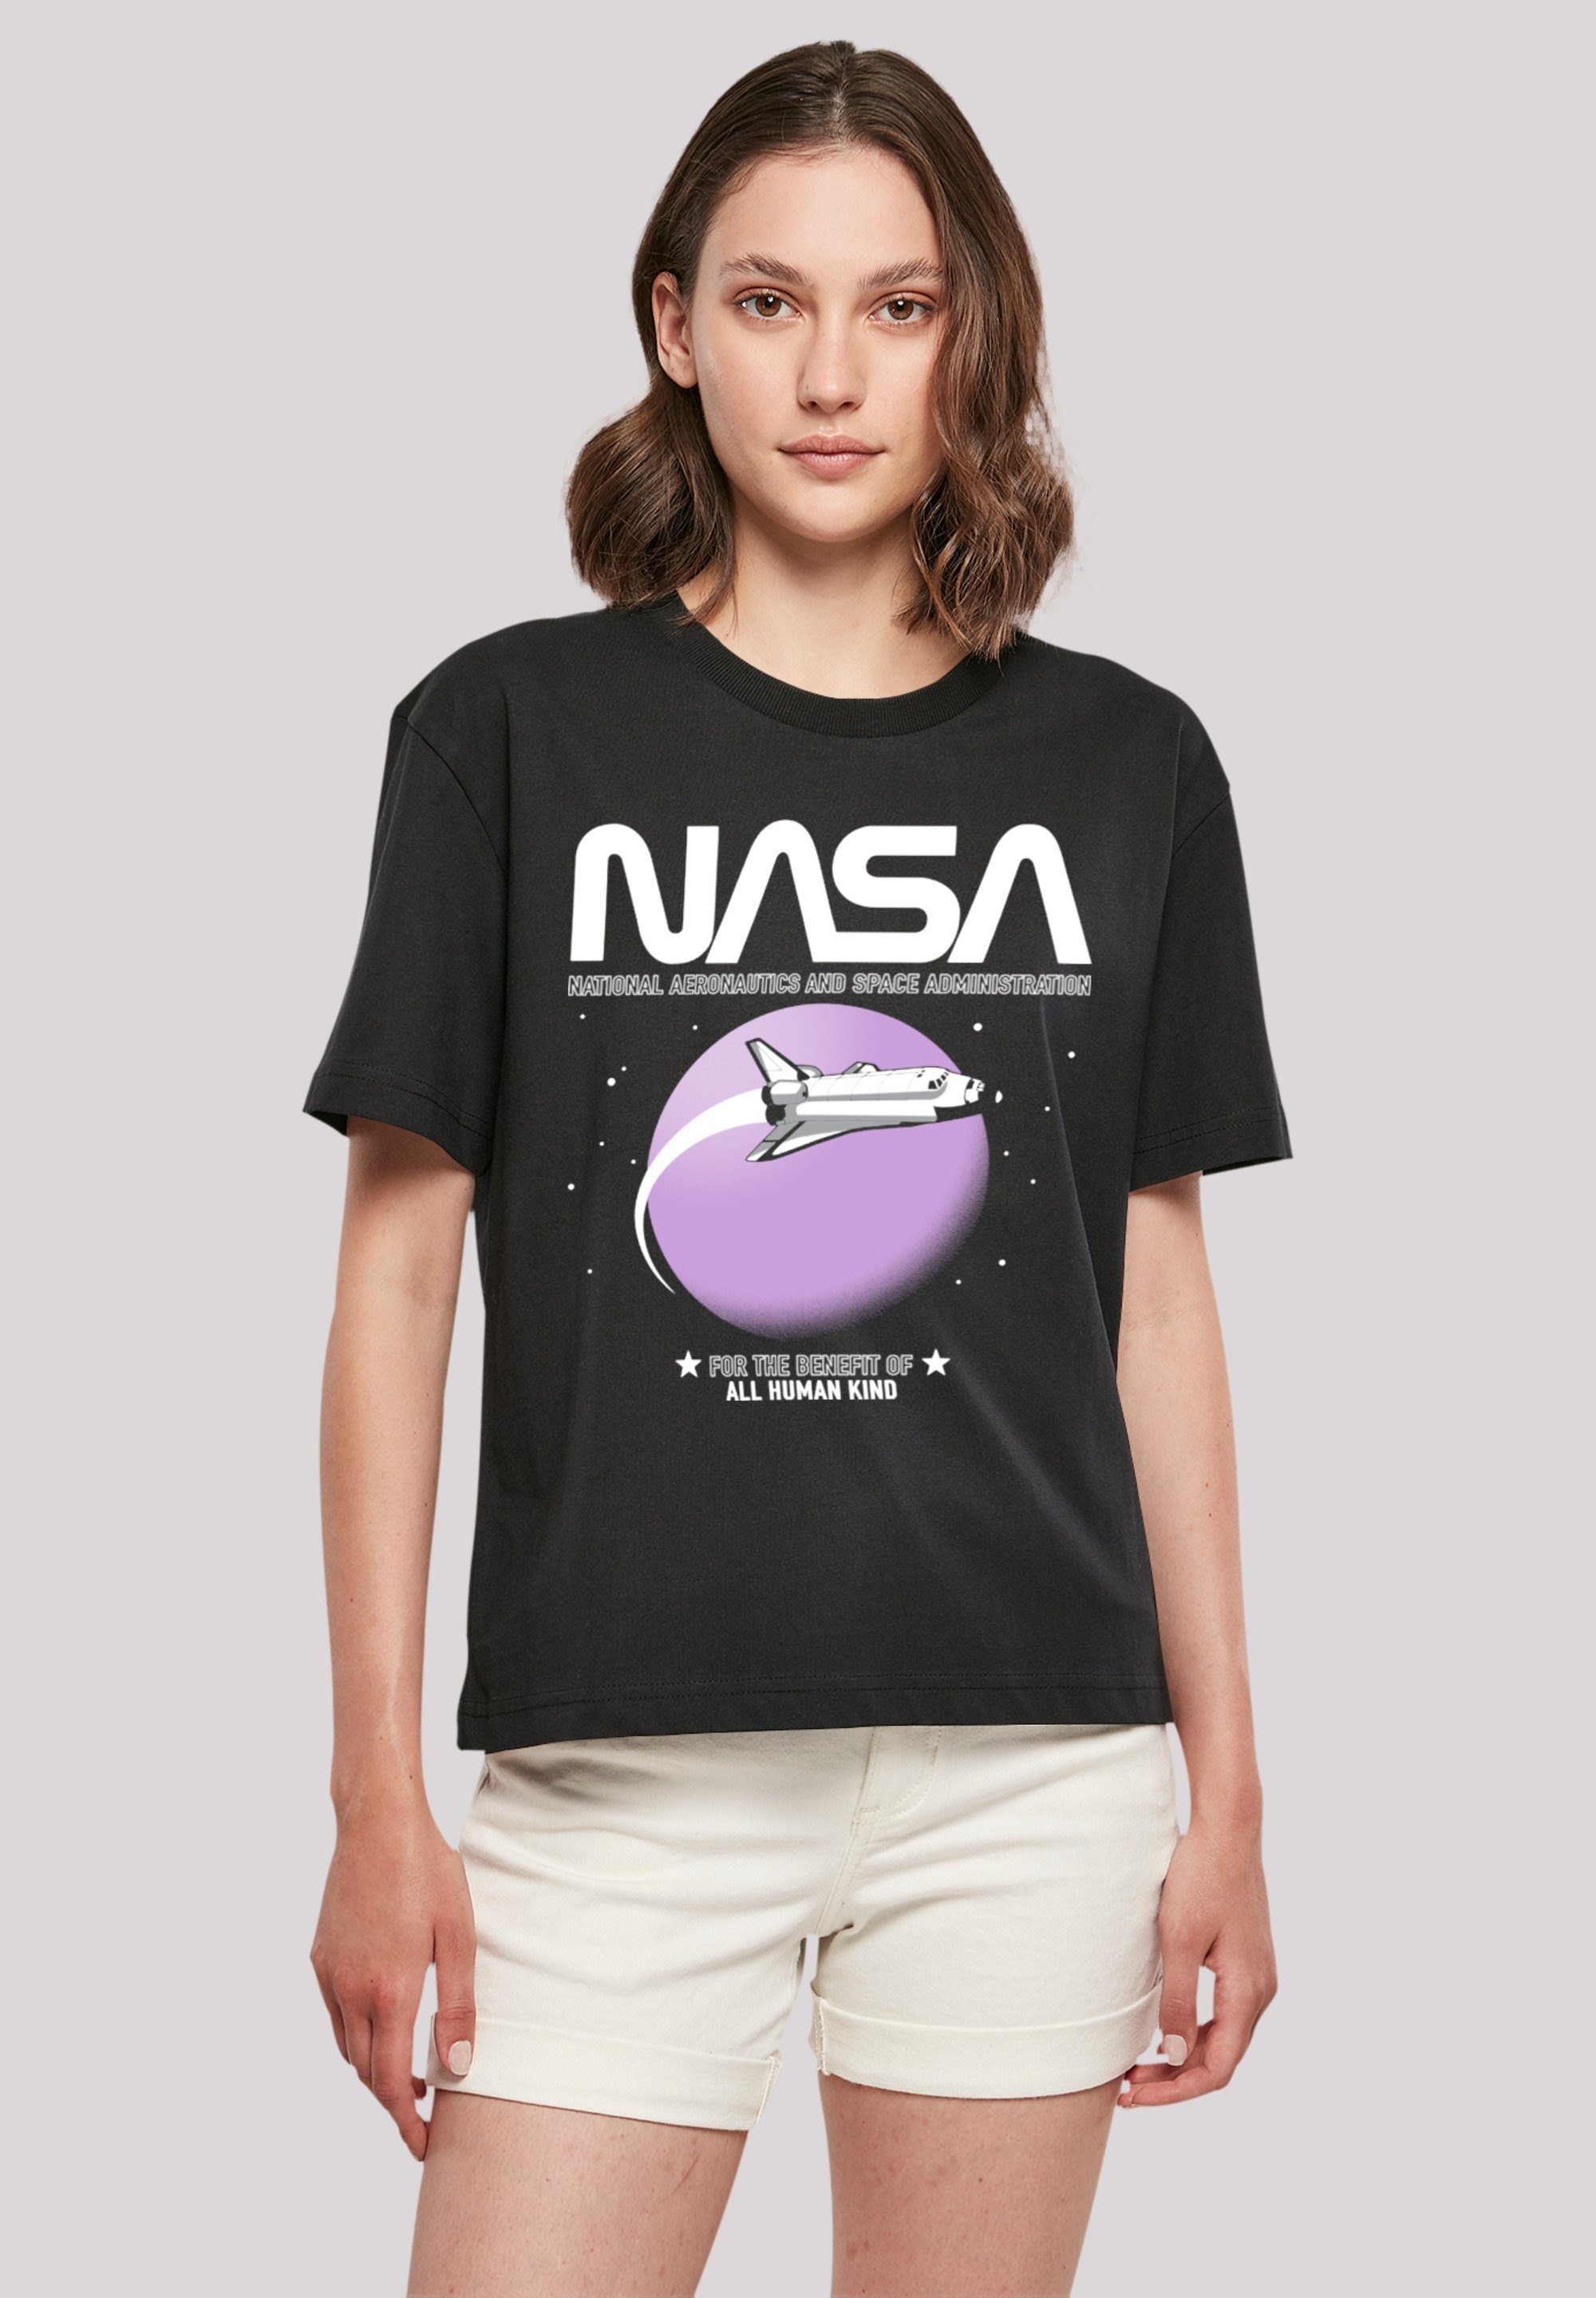 Shuttle aus, Orbit Fällt F4NT4STIC eine bitte kleiner weit bestellen Größe Print, T-Shirt NASA